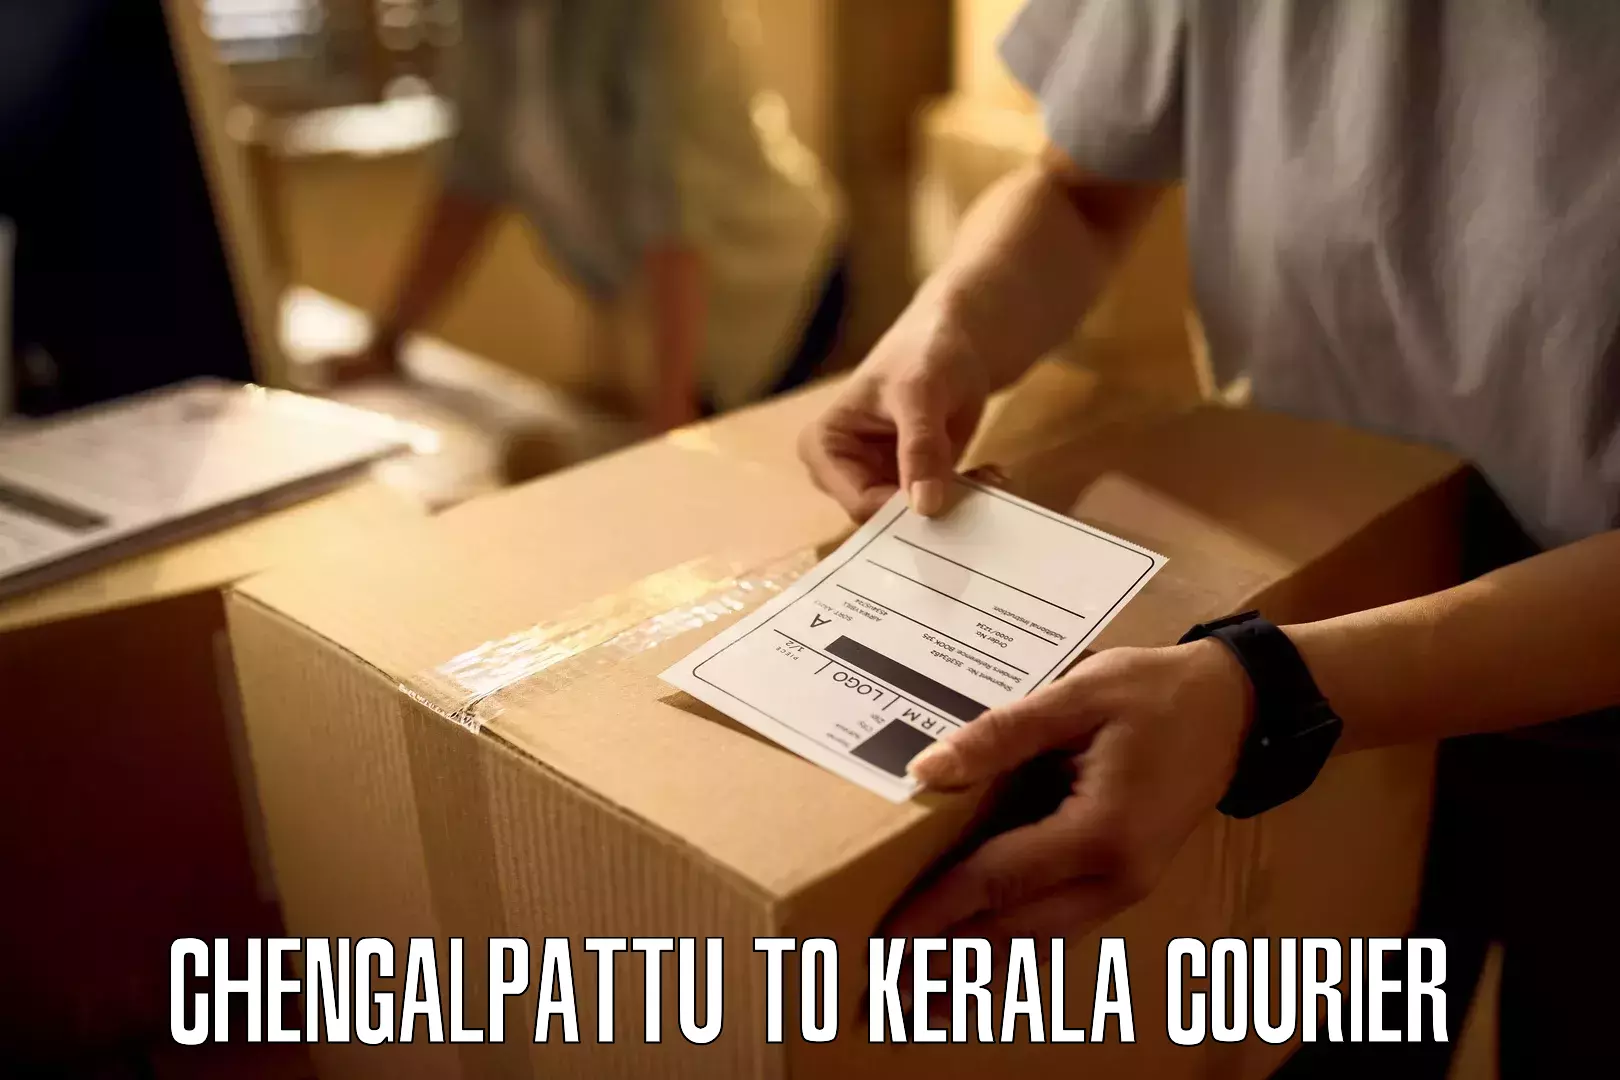 Corporate courier solutions Chengalpattu to Kakkayam